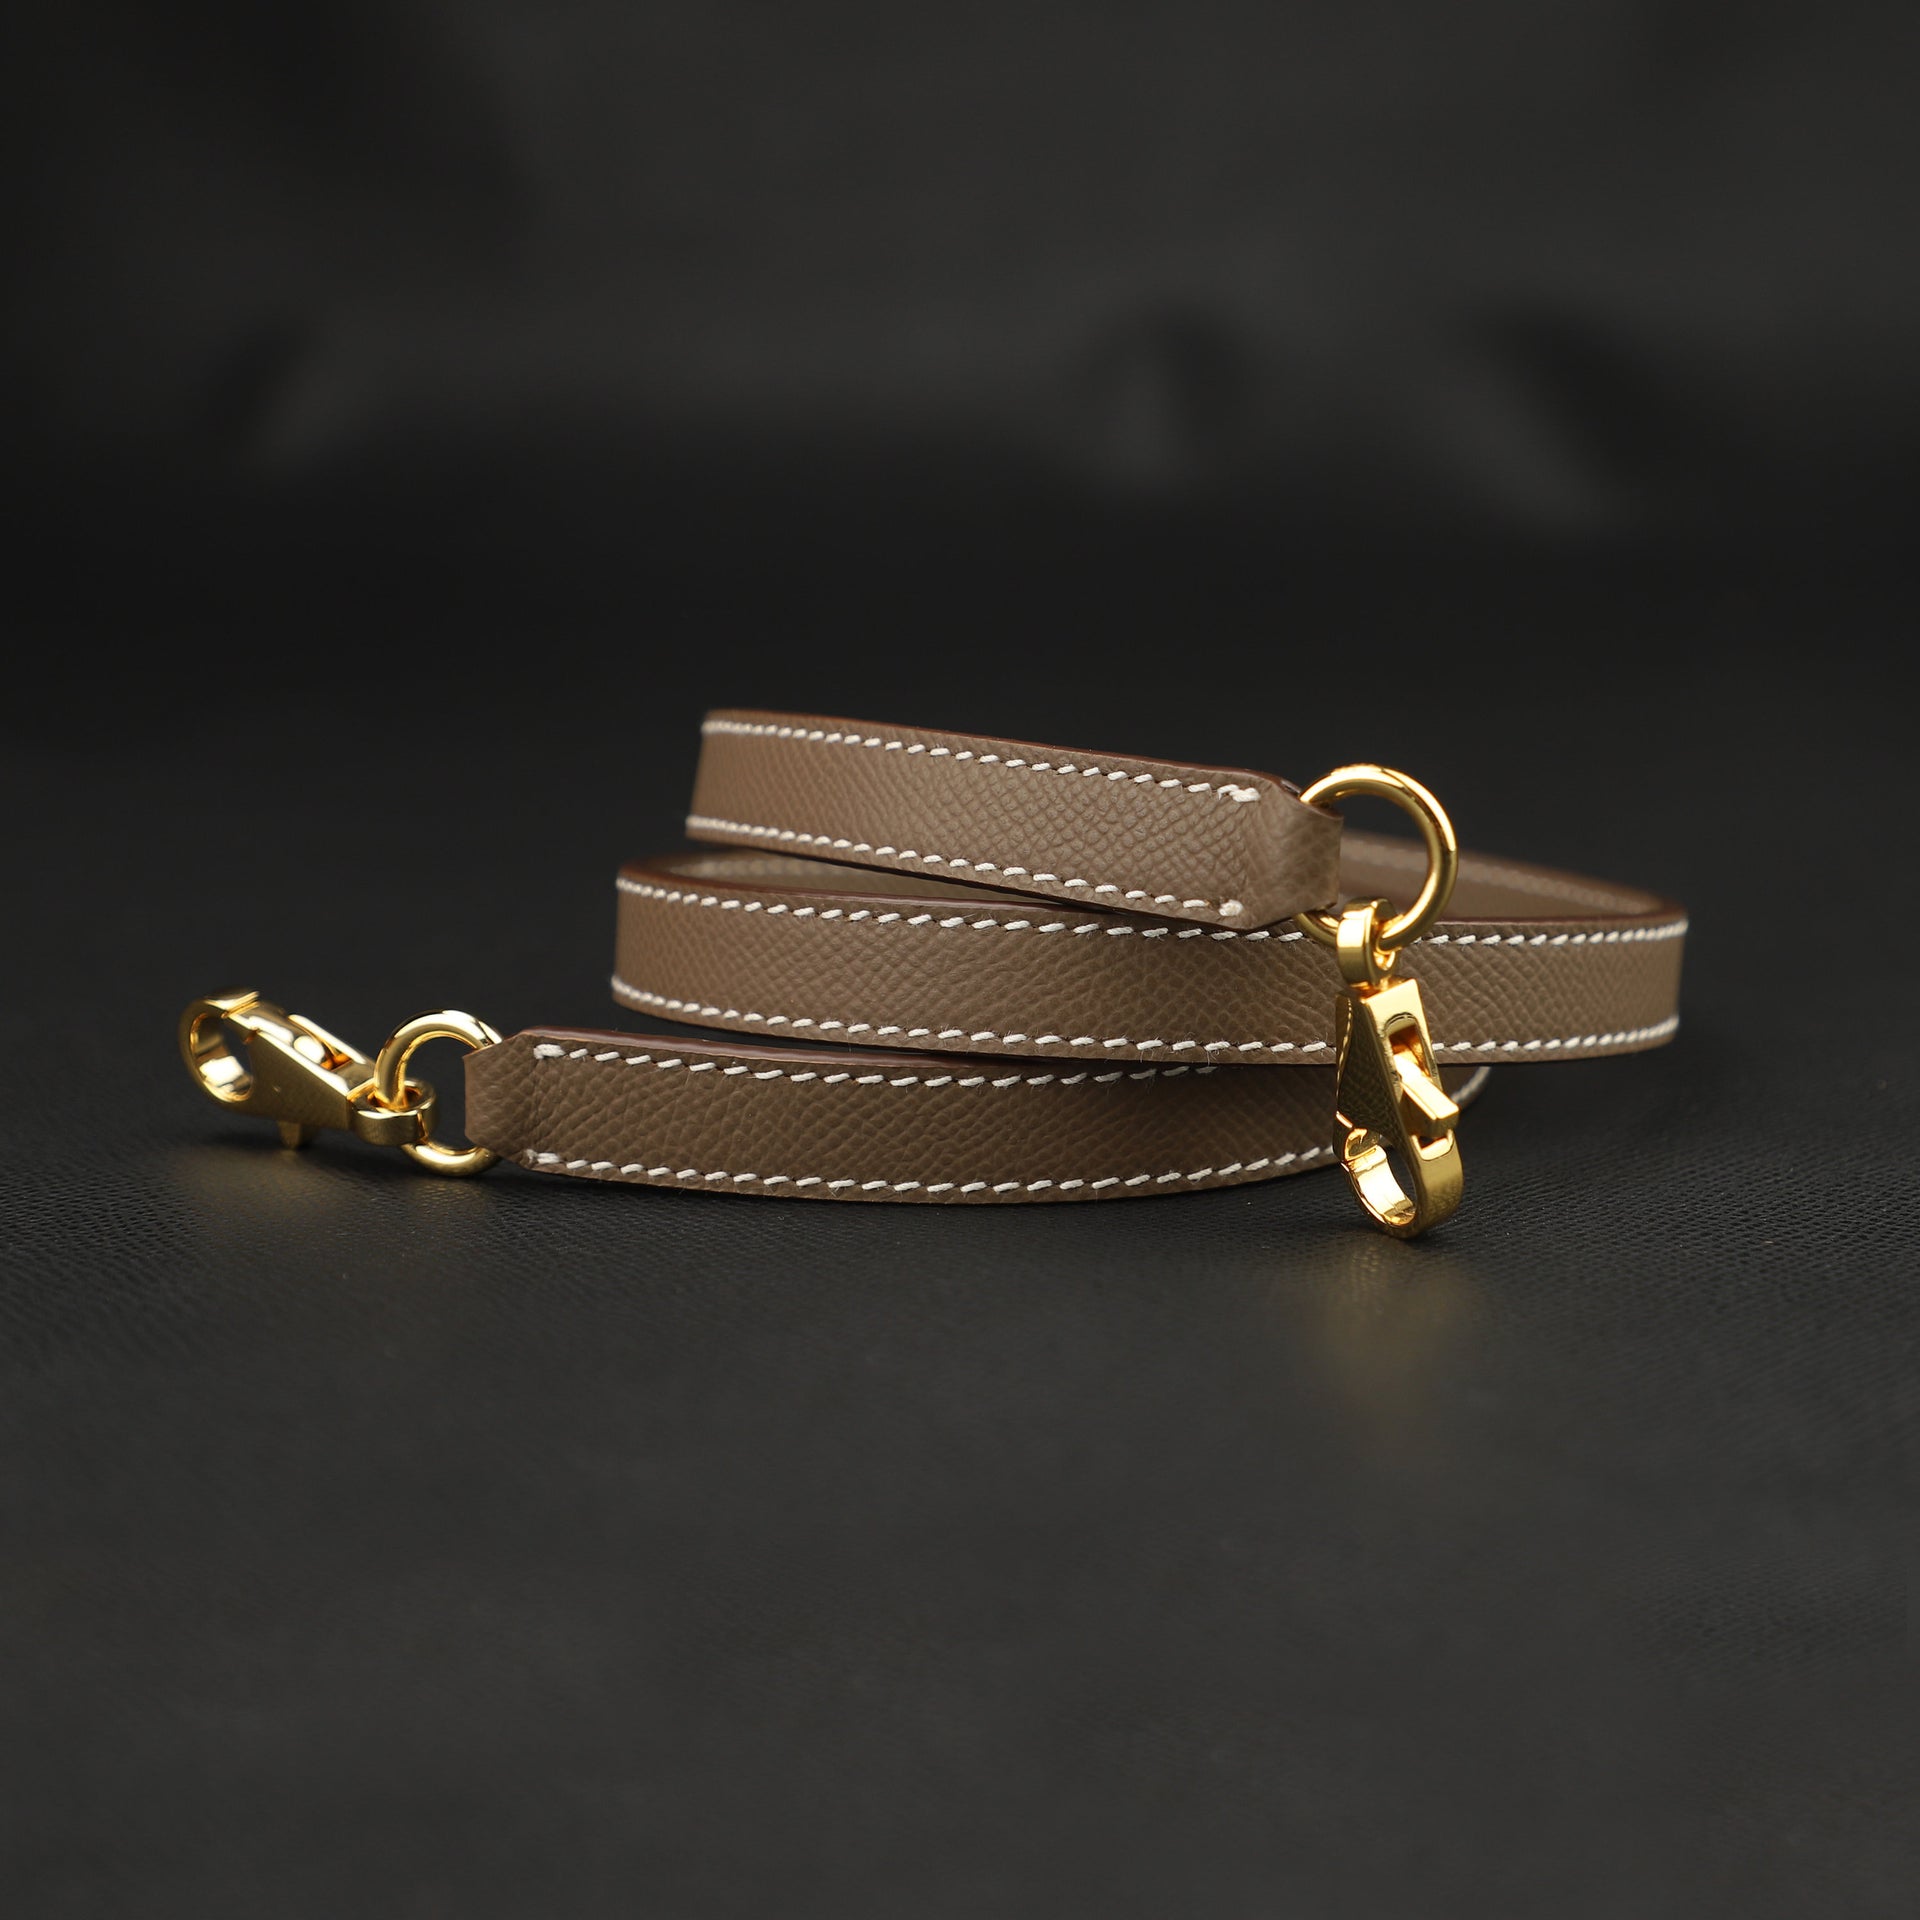 Strap You - Gold-colored metal shoulder strap